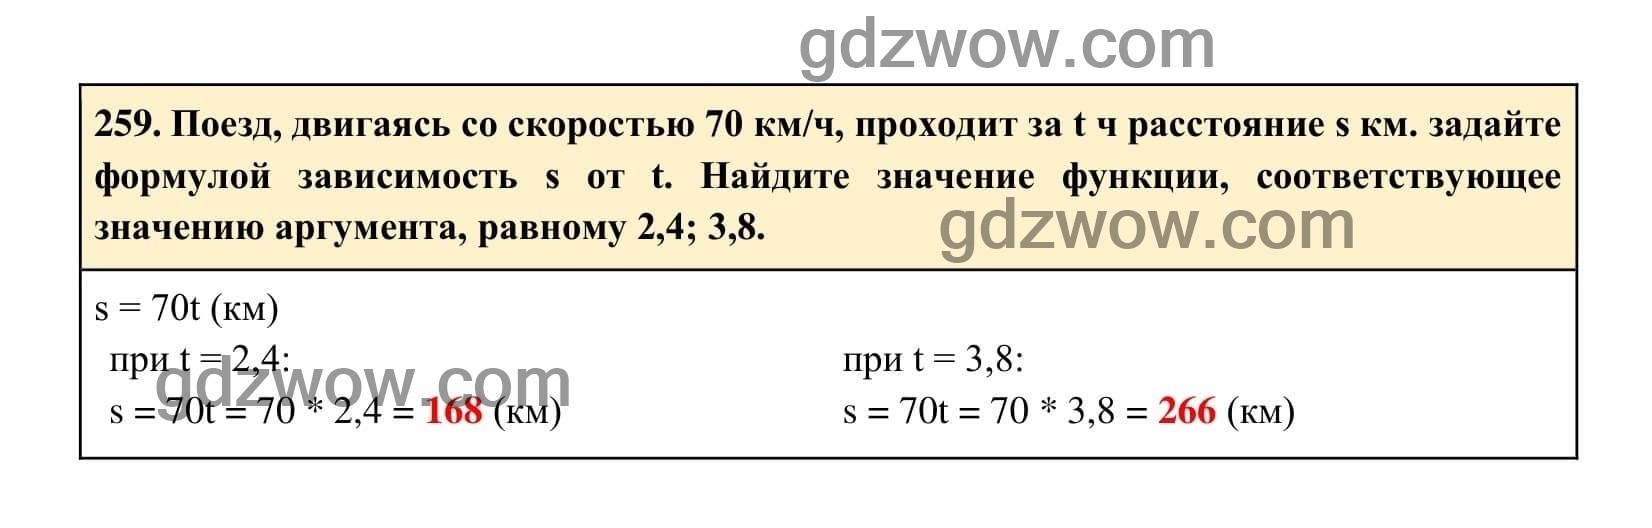 Упражнение 259 - ГДЗ по Алгебре 7 класс Учебник Макарычев (решебник) - GDZwow